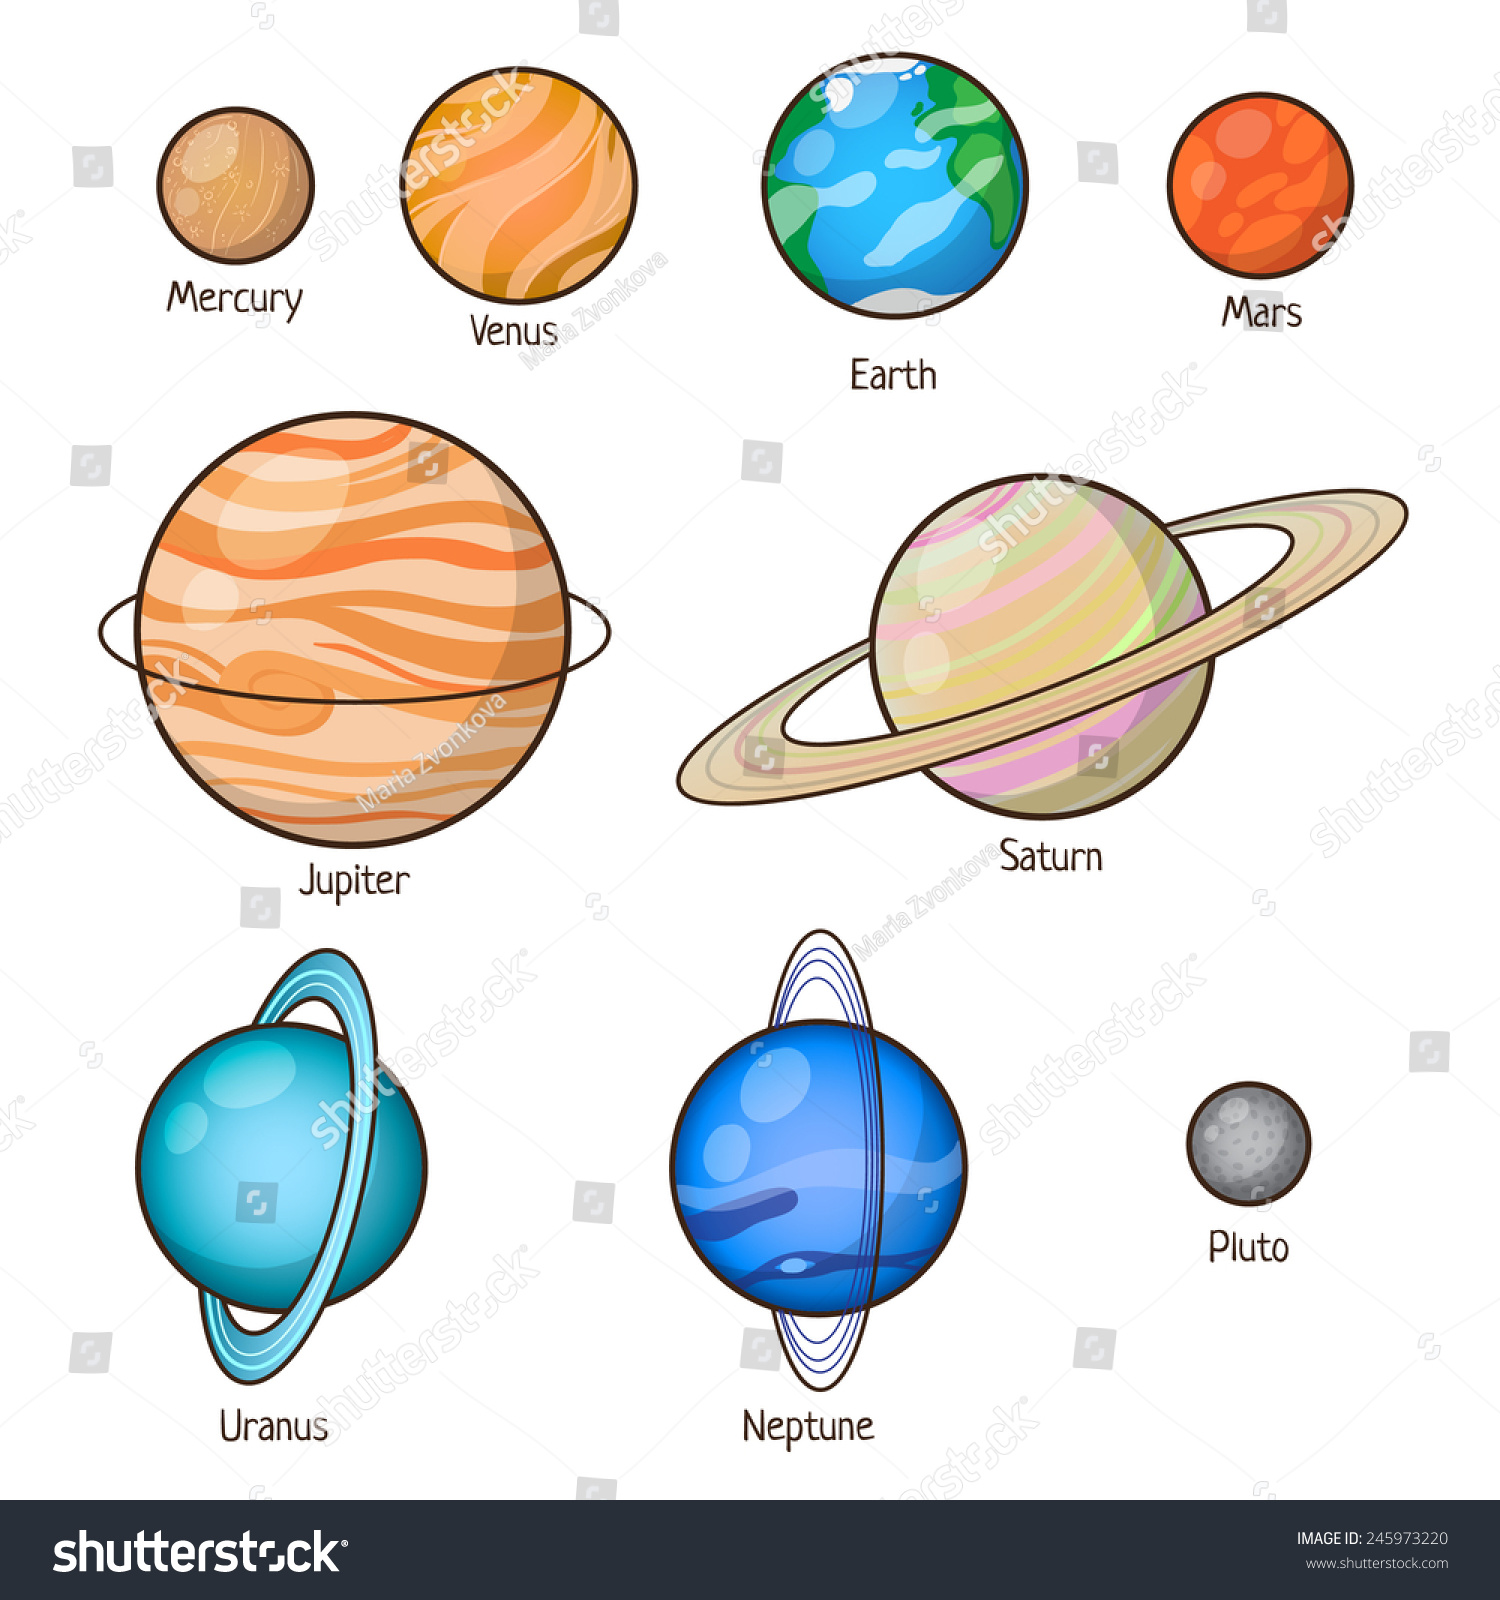 Нарисованные планеты солнечной системы Нептун